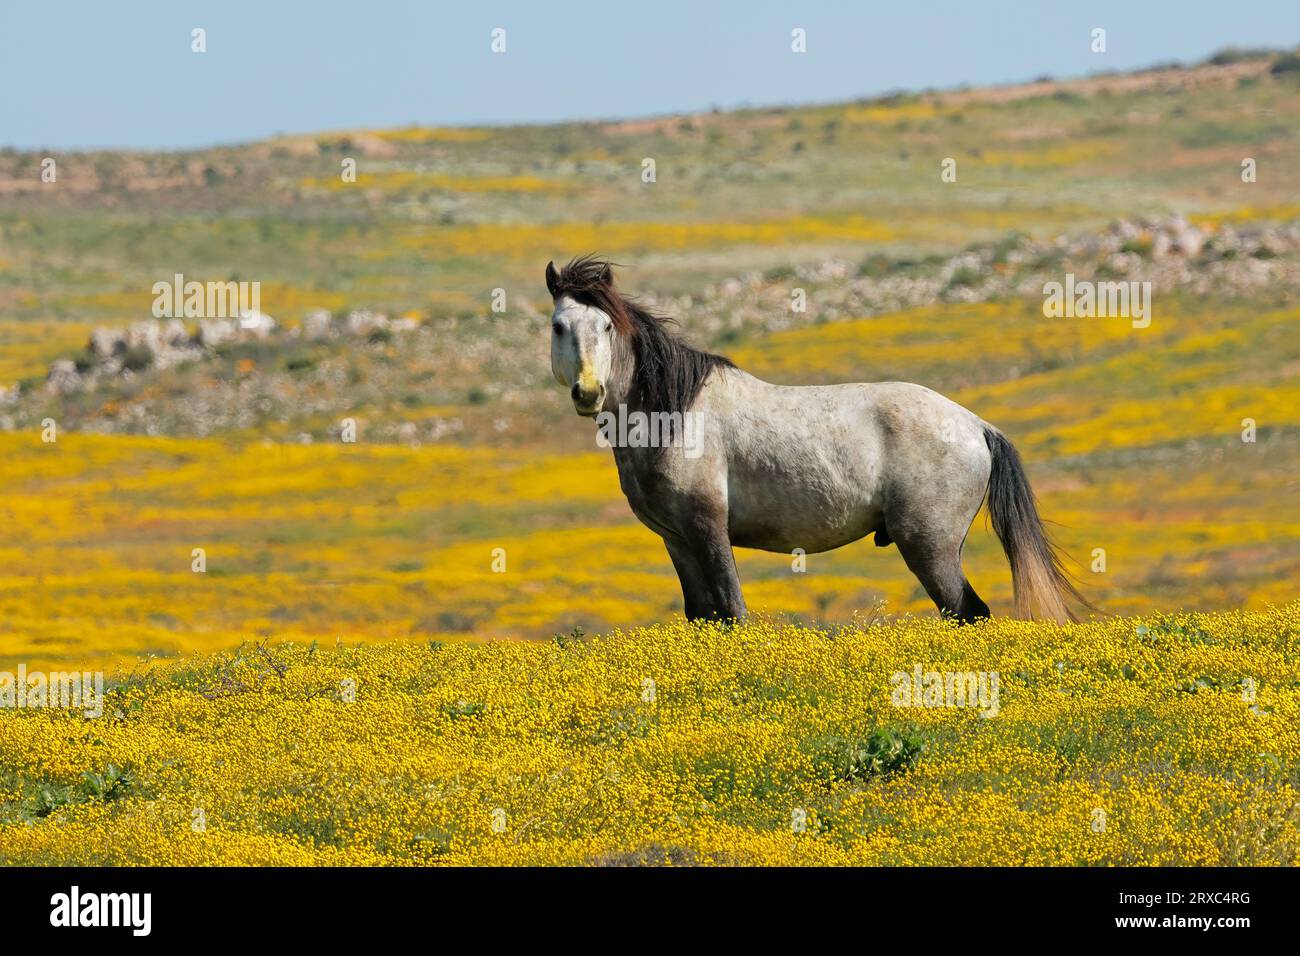 Un cheval en liberté debout dans un champ aux fleurs sauvages jaunes, Namaqualand, Afrique du Sud Banque D'Images